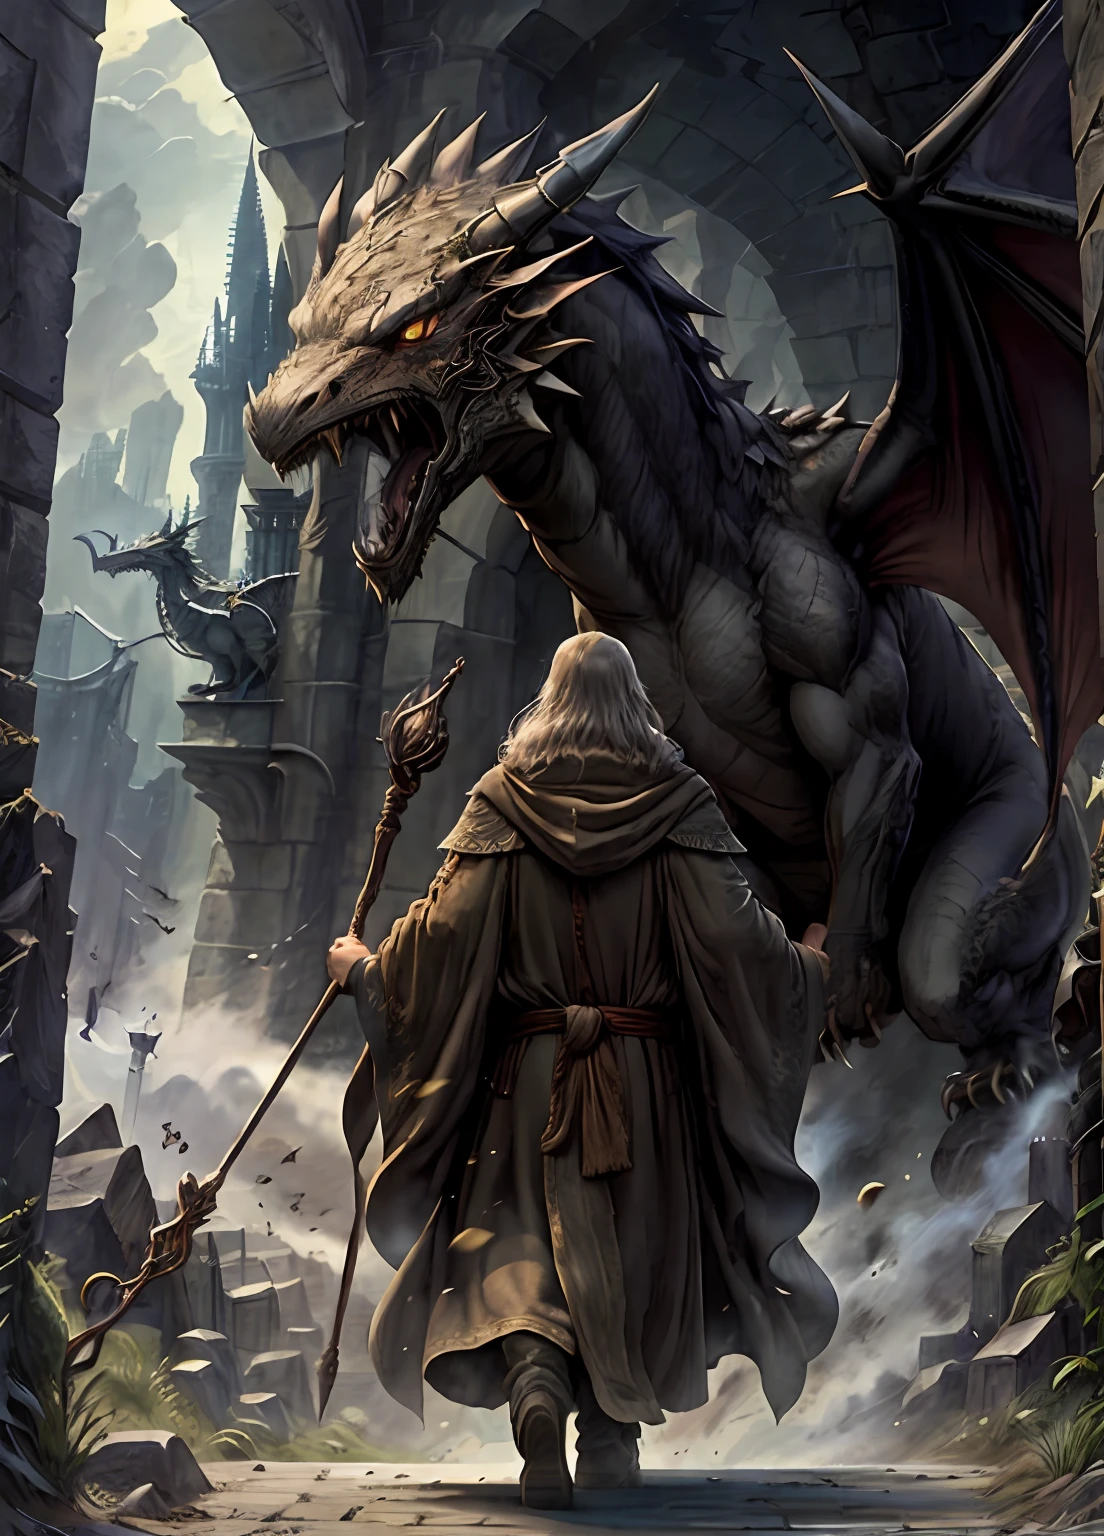 Um antigo mago em vestes marrons, brandindo seu cajado, enfrenta um dragão feroz em frente a um castelo majestoso.